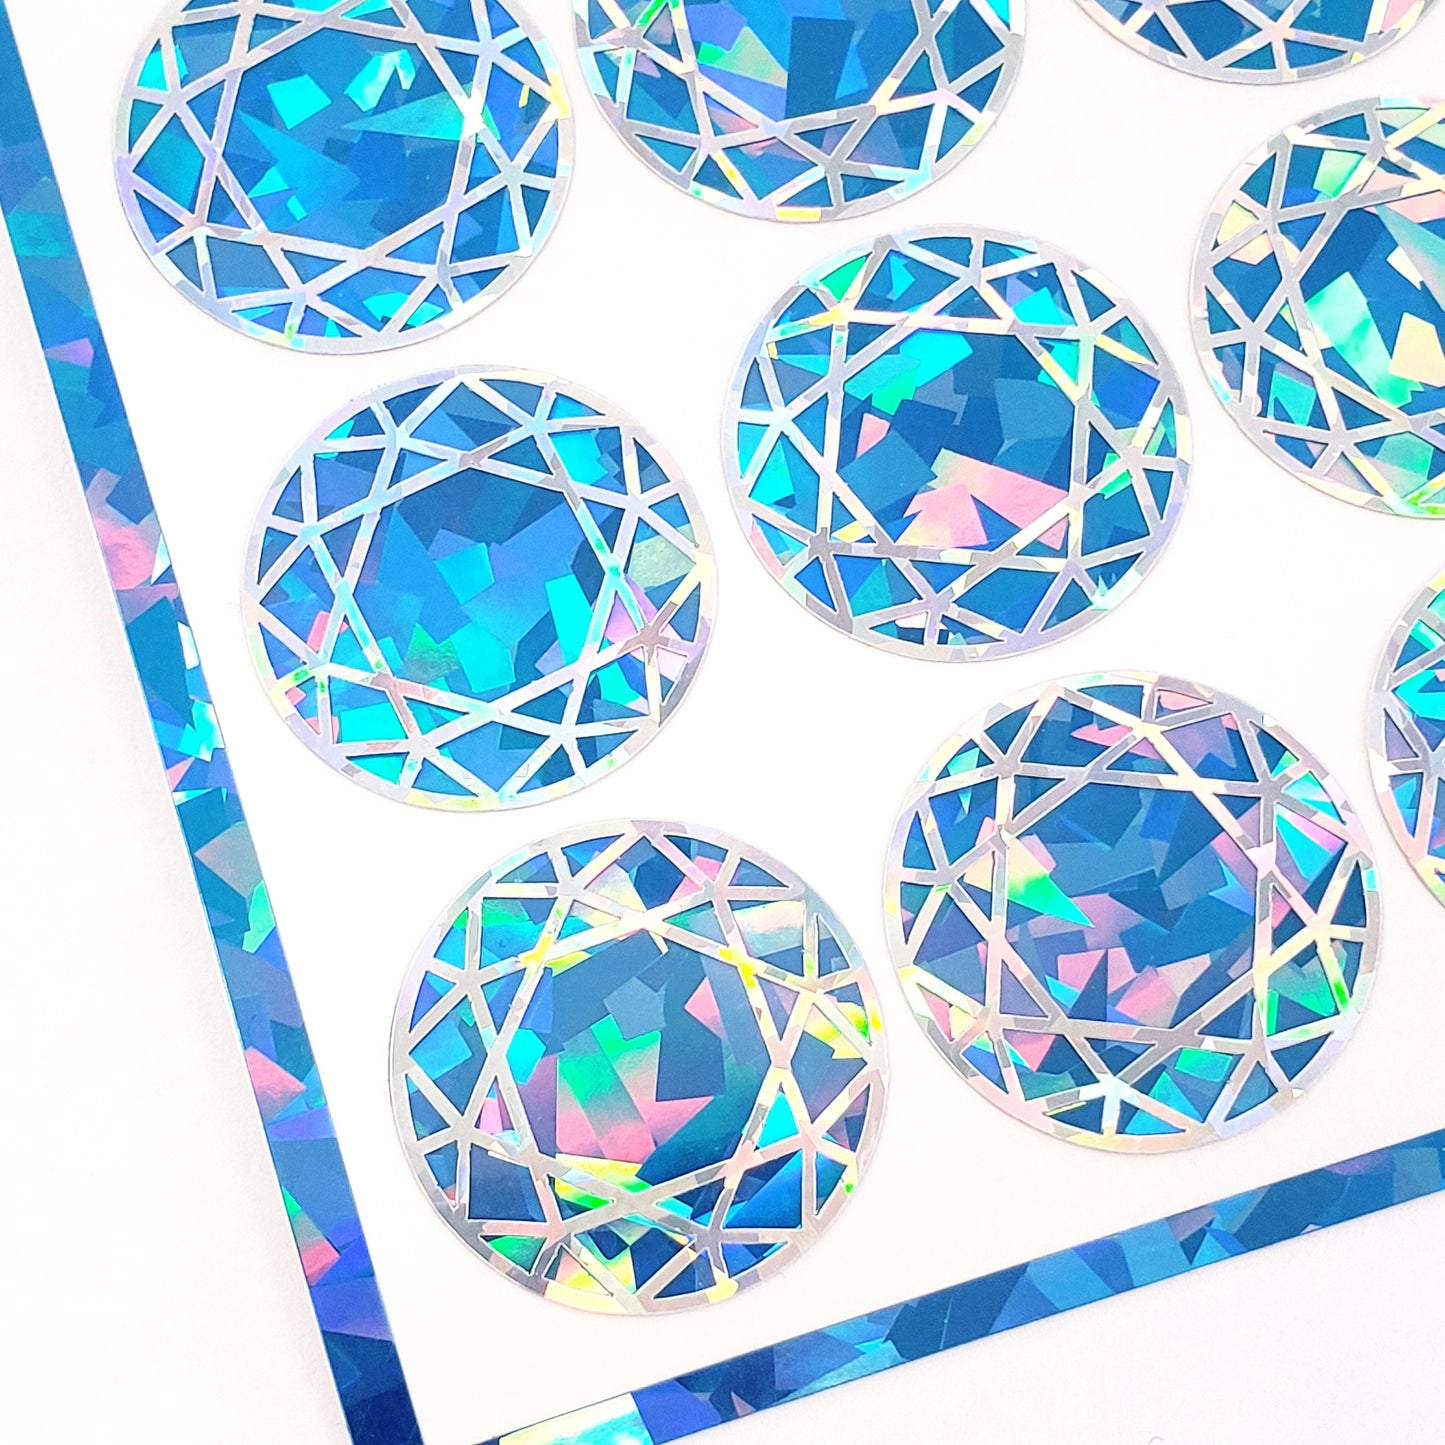 Sagittarius Birthstone stickers, set of 20 small sparkly round blue topaz gem decals for December birthdays, cards, journals and scrapbooks.